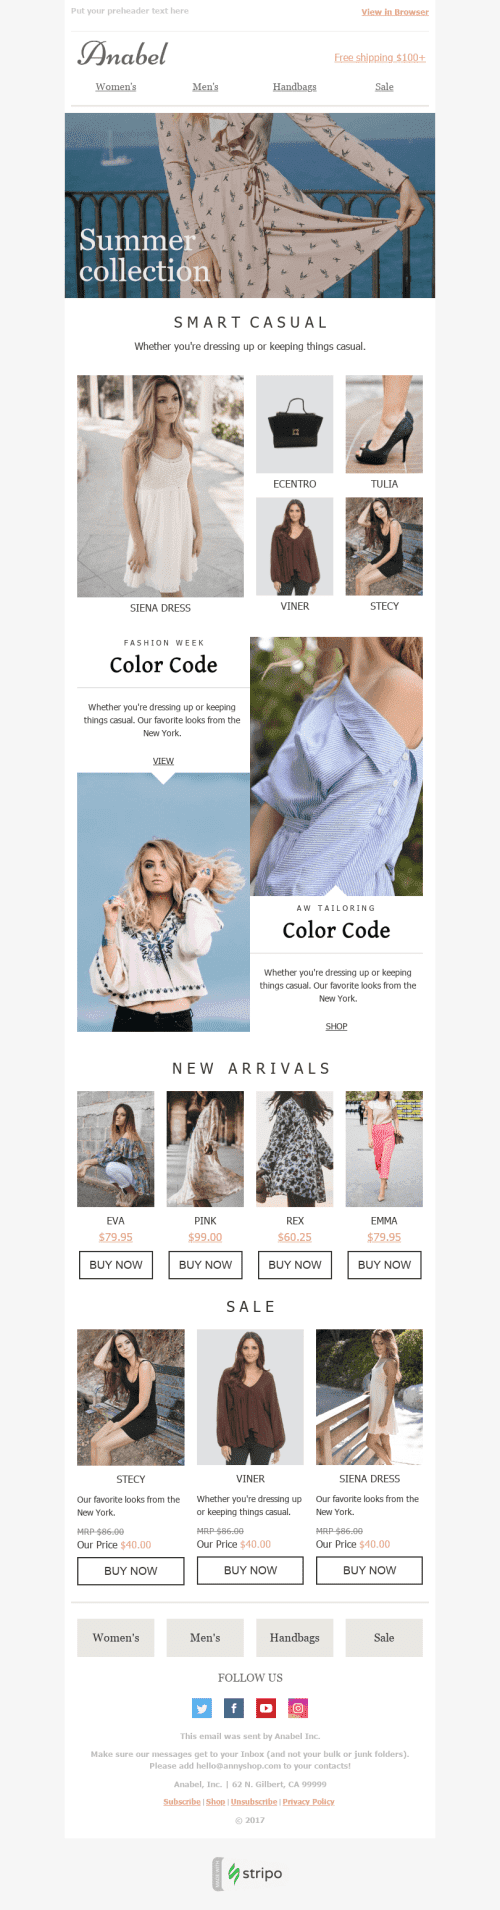 Plantilla de correo electrónico "Colores brillantes" de Promoción para la industria de Moda mobile view